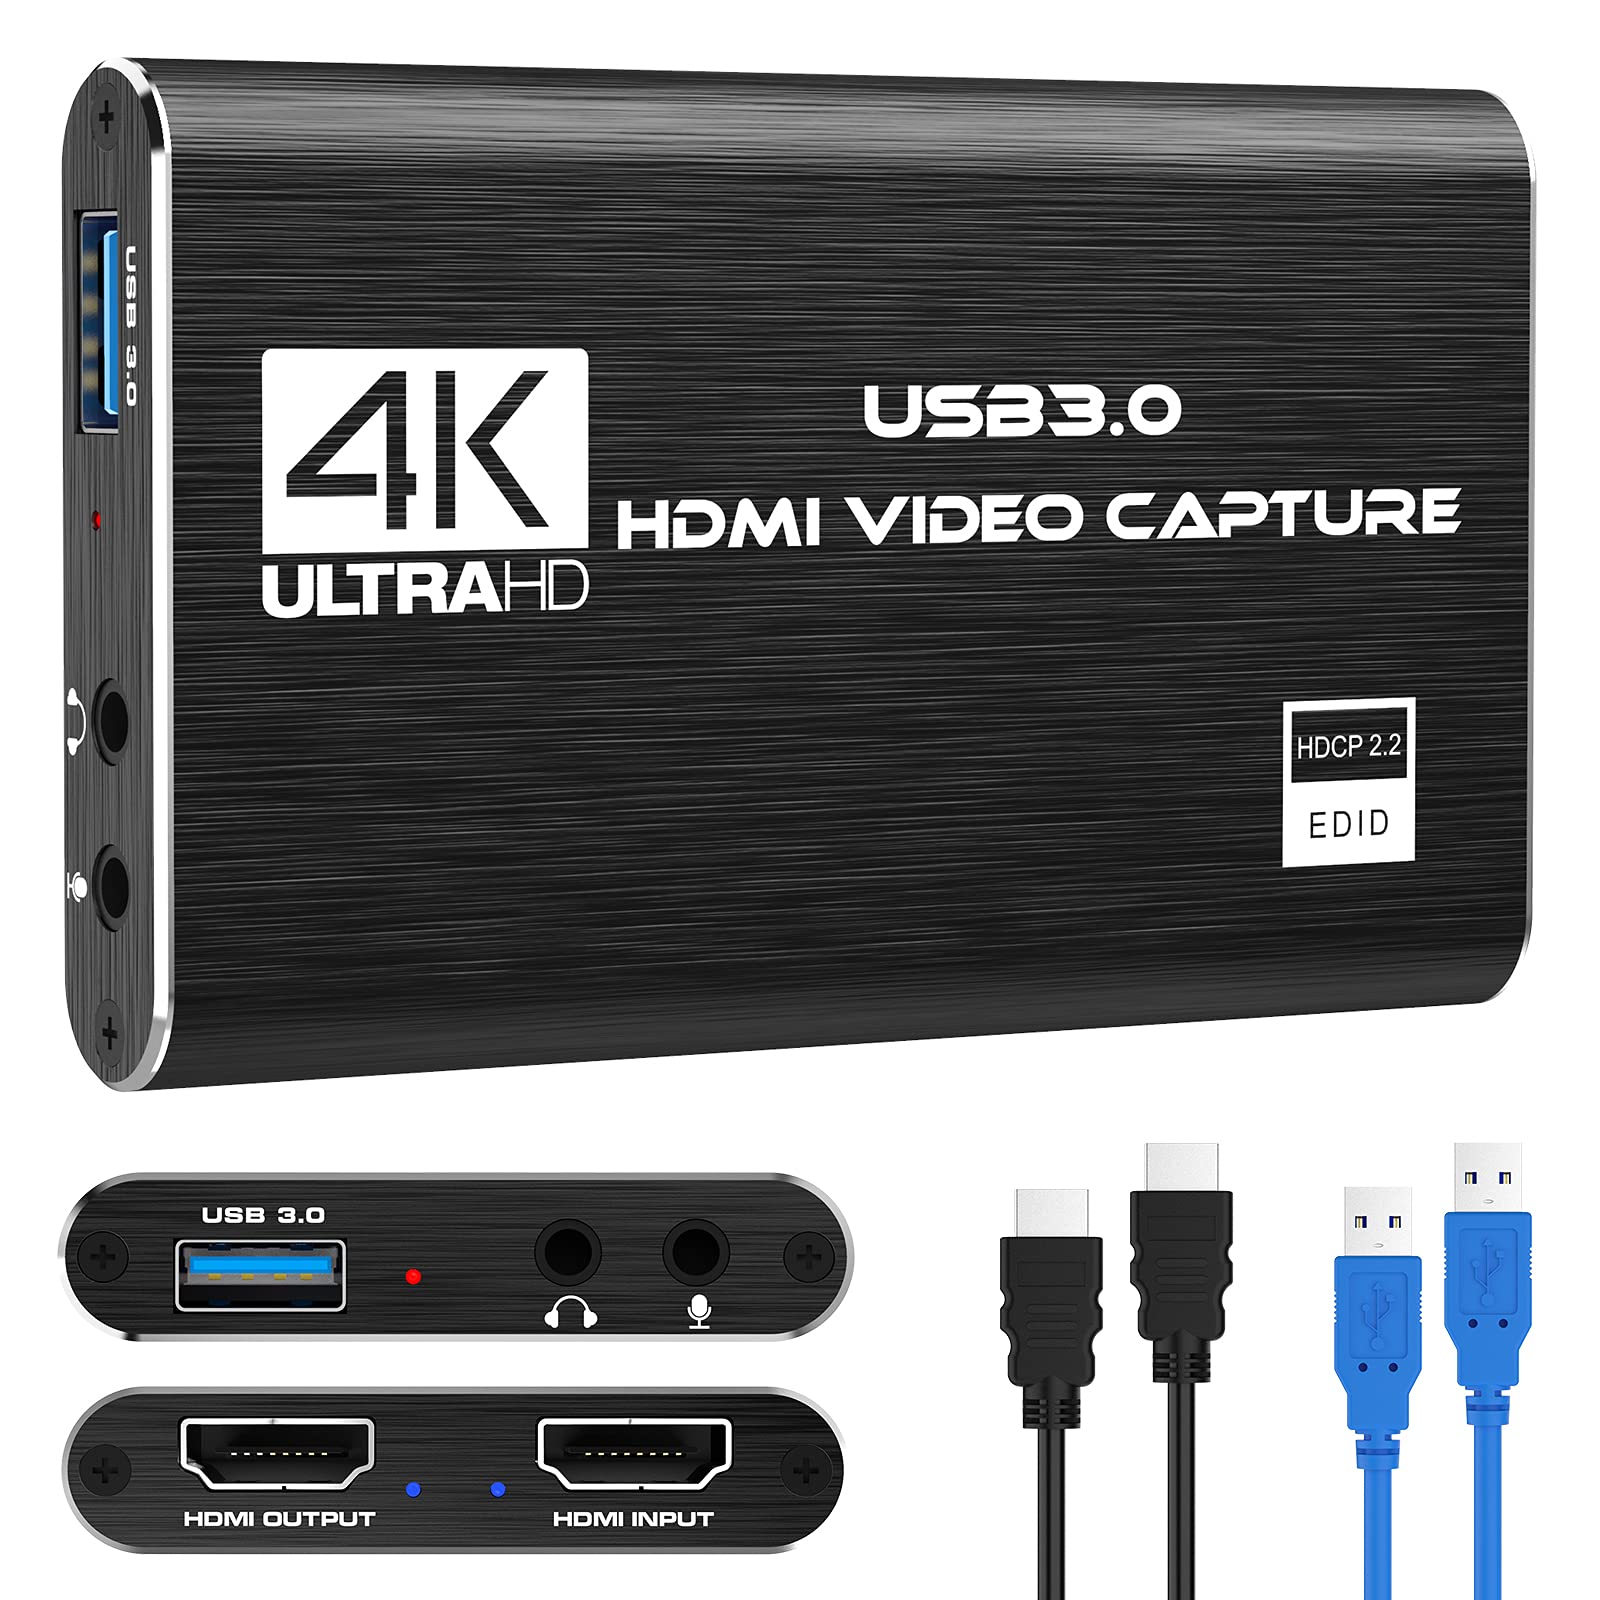 Tæller insekter Utrolig immunisering 4K Audio Video Capture Card HDMI USB 3.0 Video Capture Device 1080P 60